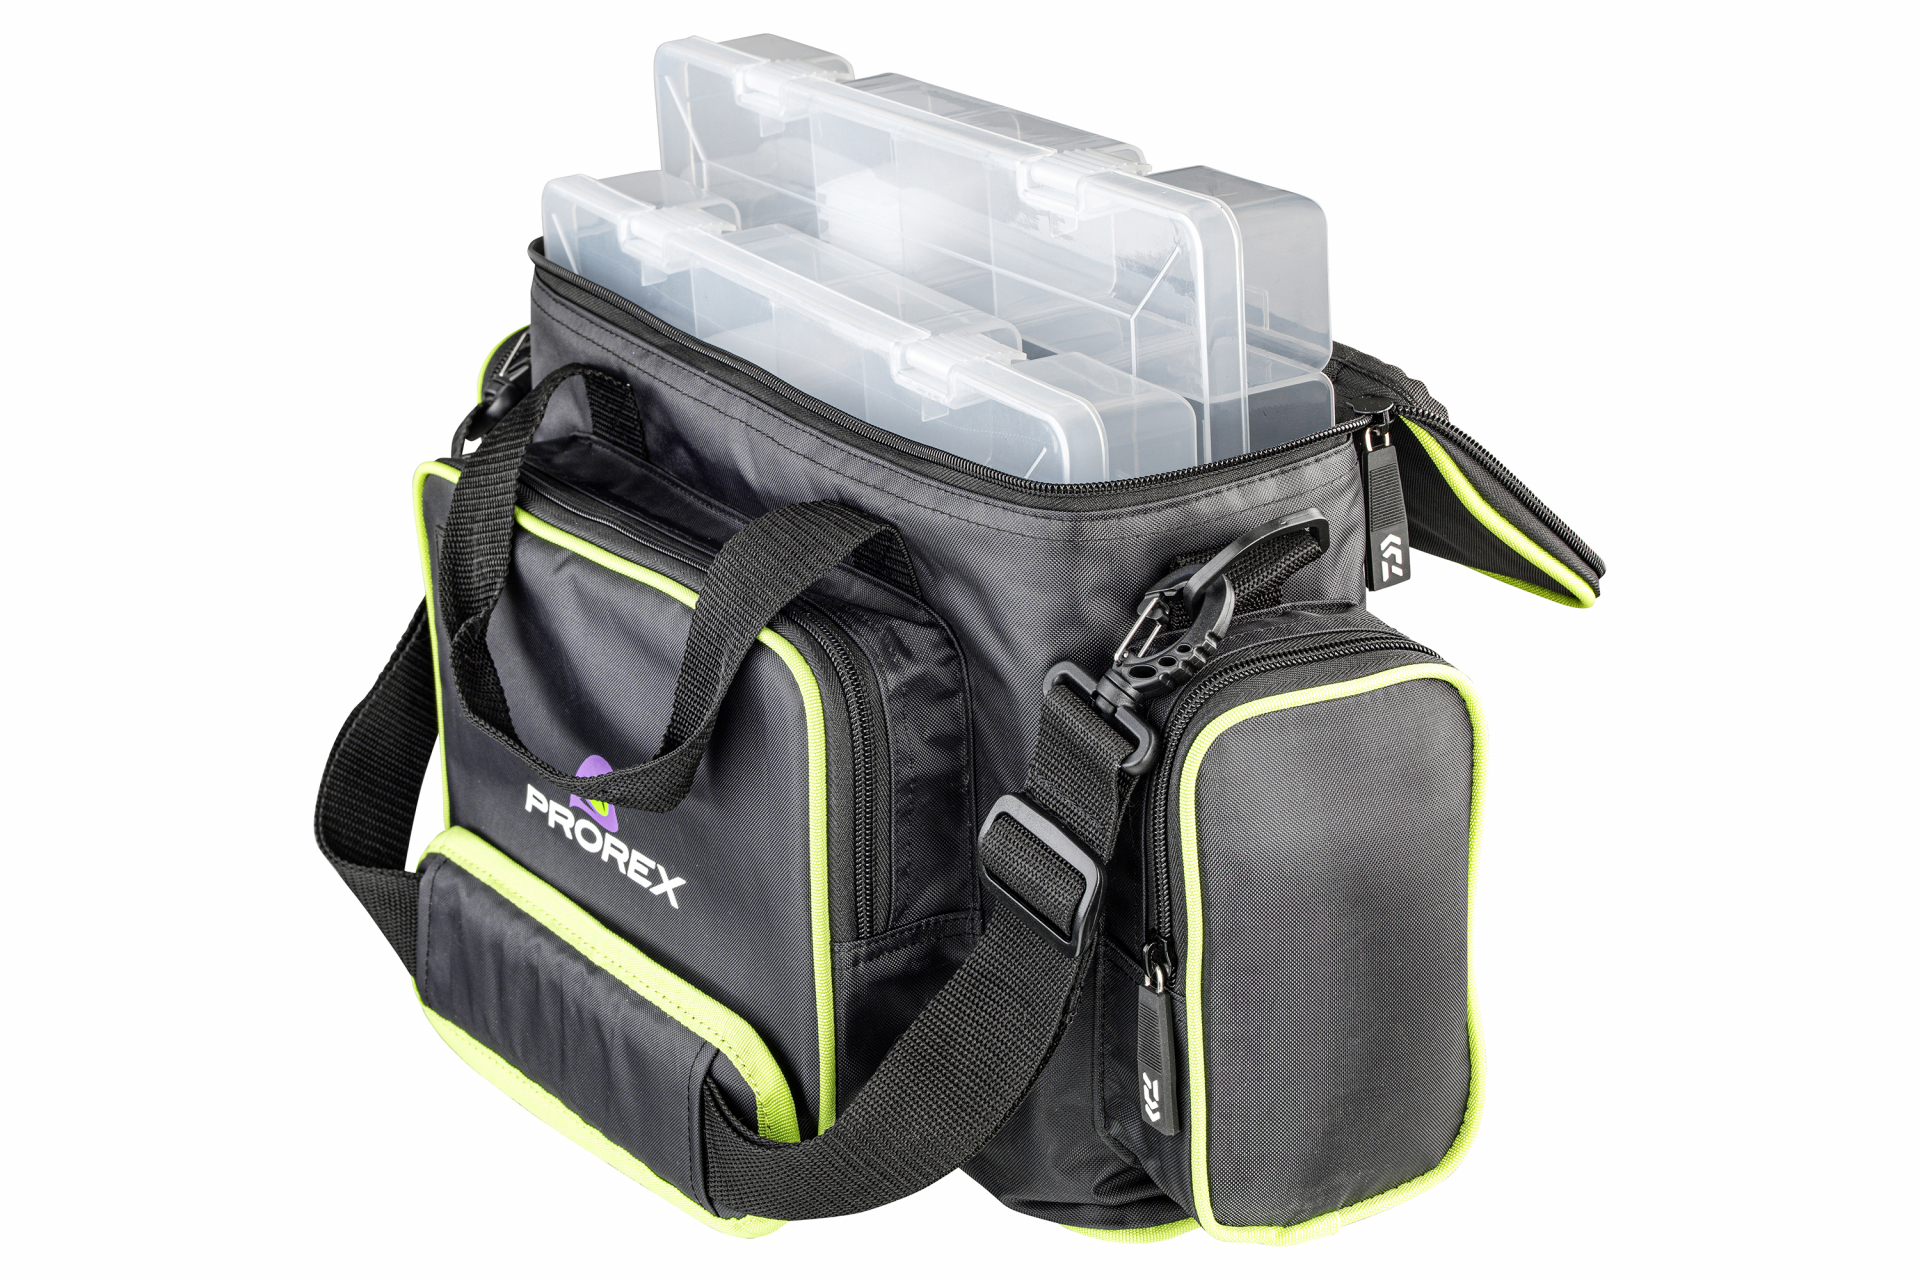 Prorex Tackle Bag <span>| Torba na przynęty | Rozmiar M</span>